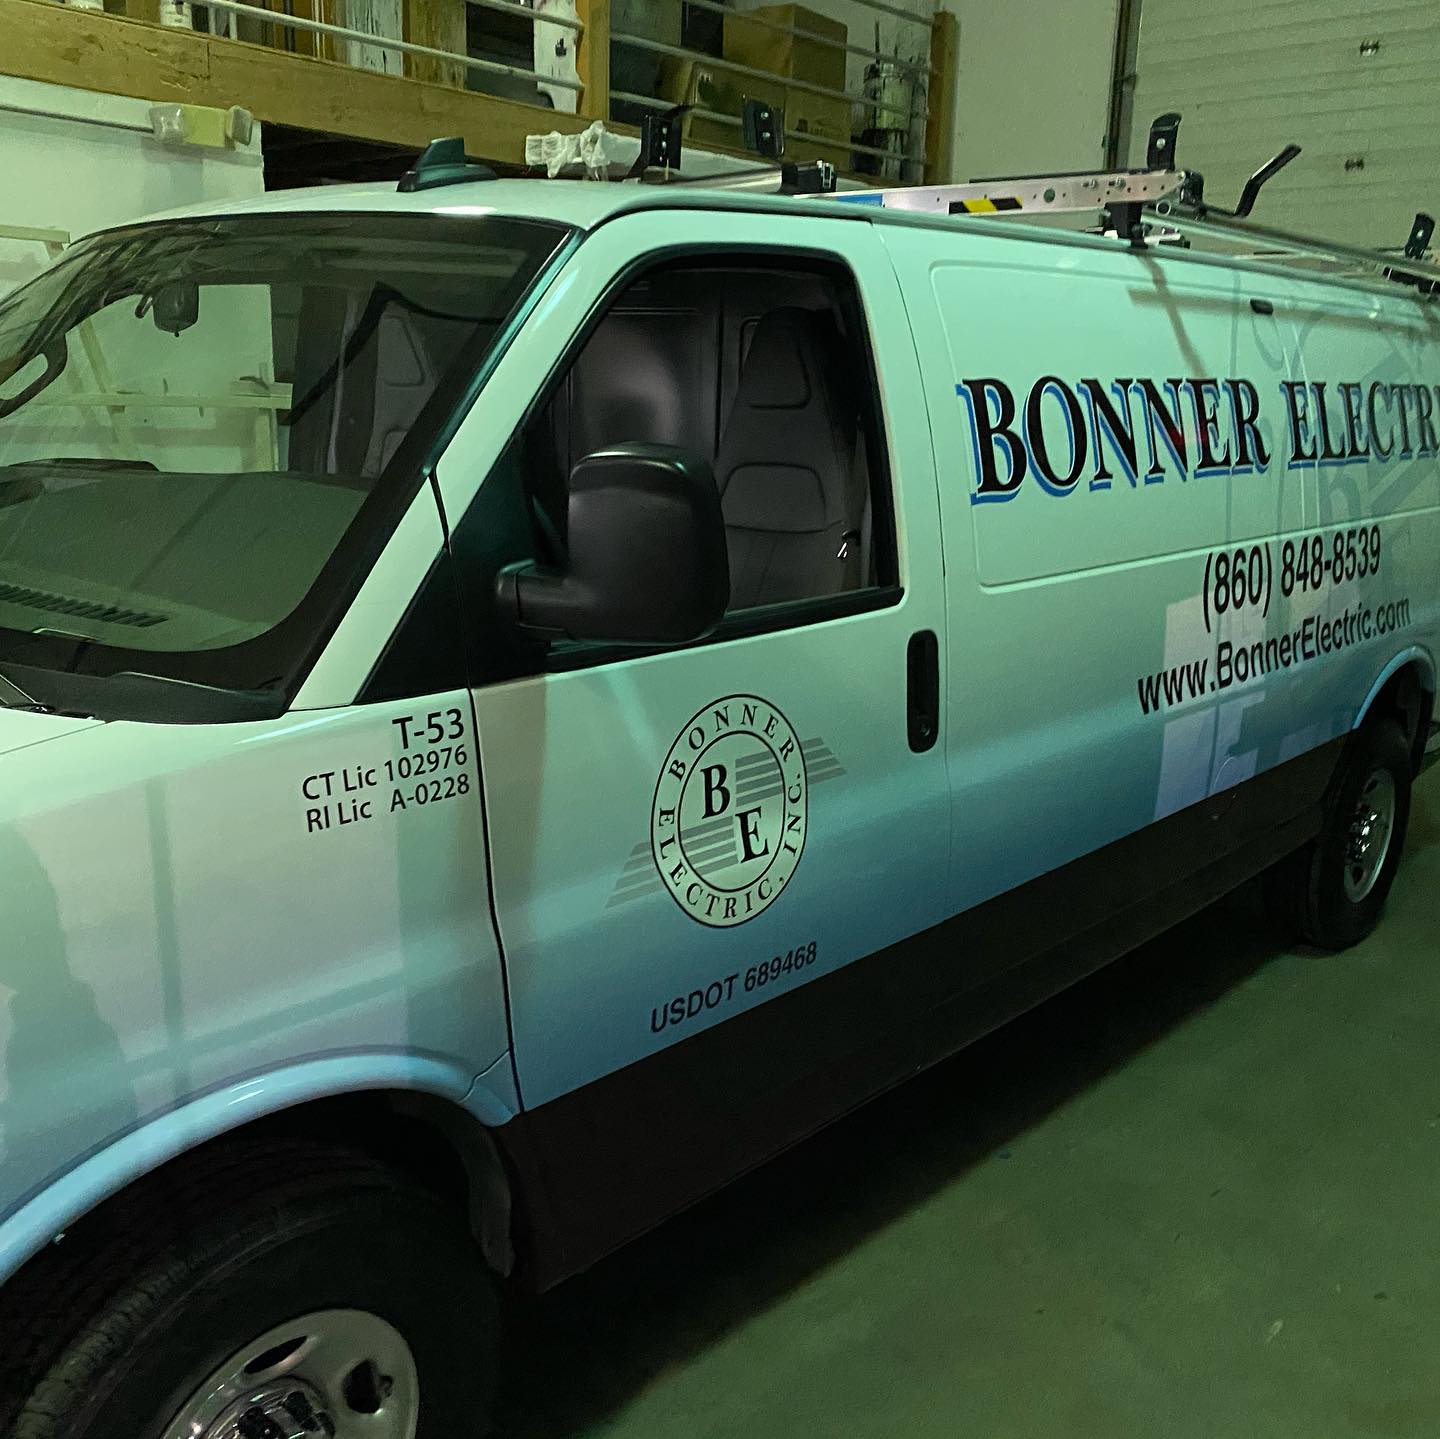 Bonner Electric Norwich, Connecticut 2